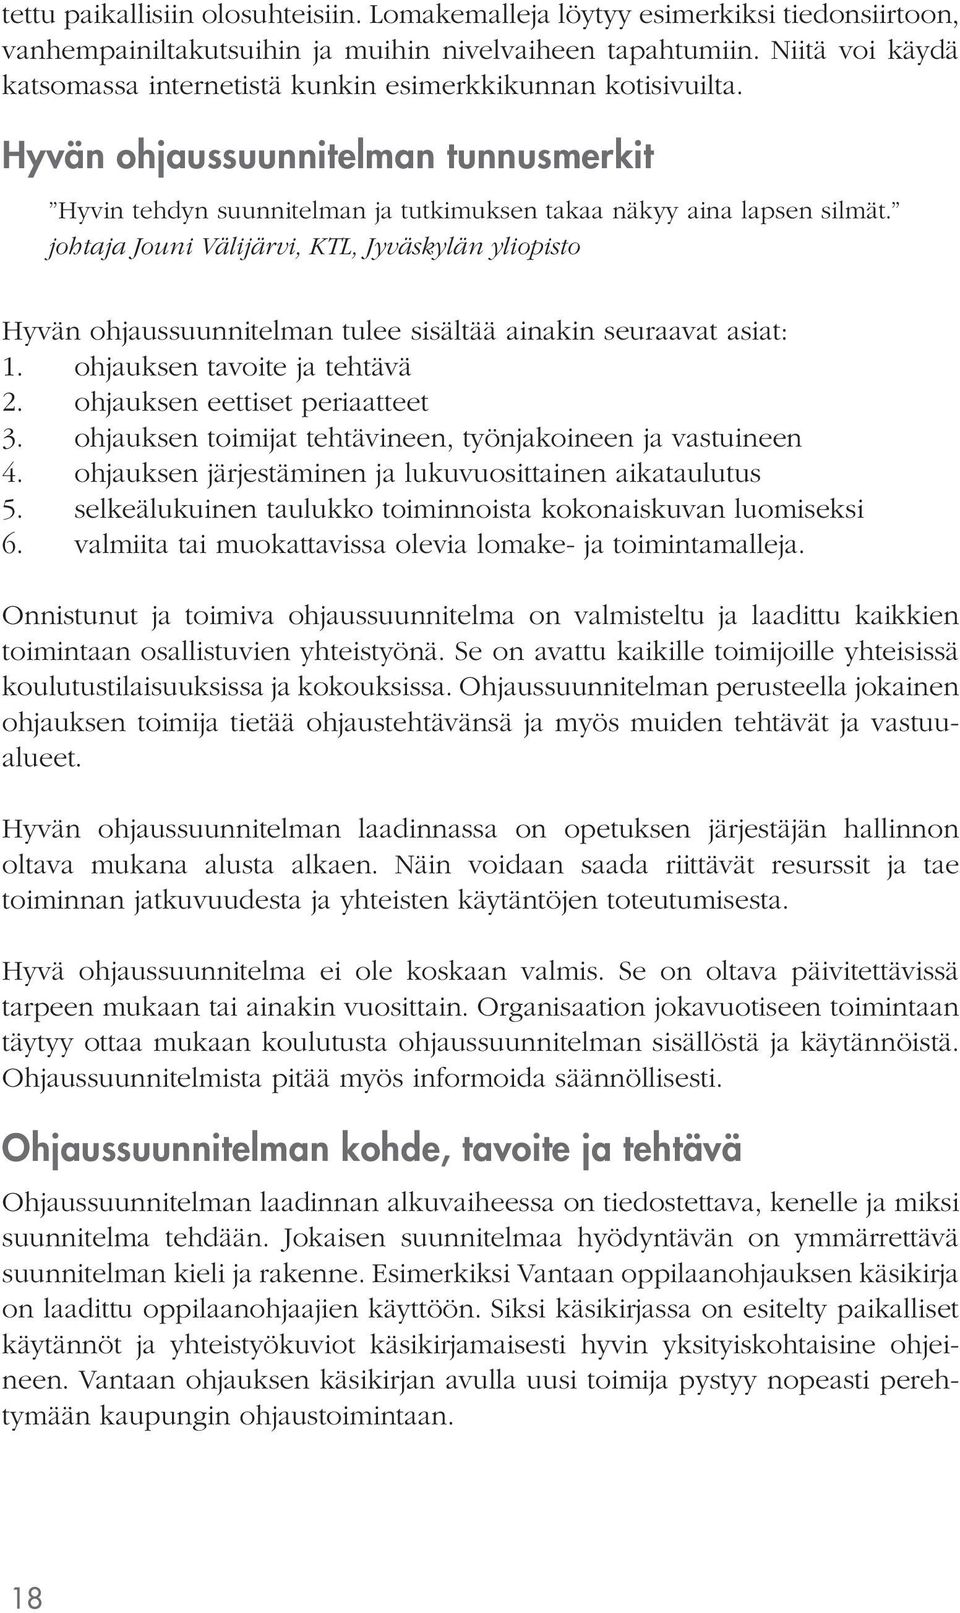 johtaja Jouni Välijärvi, KTL, Jyväskylän yliopisto Hyvän ohjaussuunnitelman tulee sisältää ainakin seuraavat asiat: 1. ohjauksen tavoite ja tehtävä 2. ohjauksen eettiset periaatteet 3.